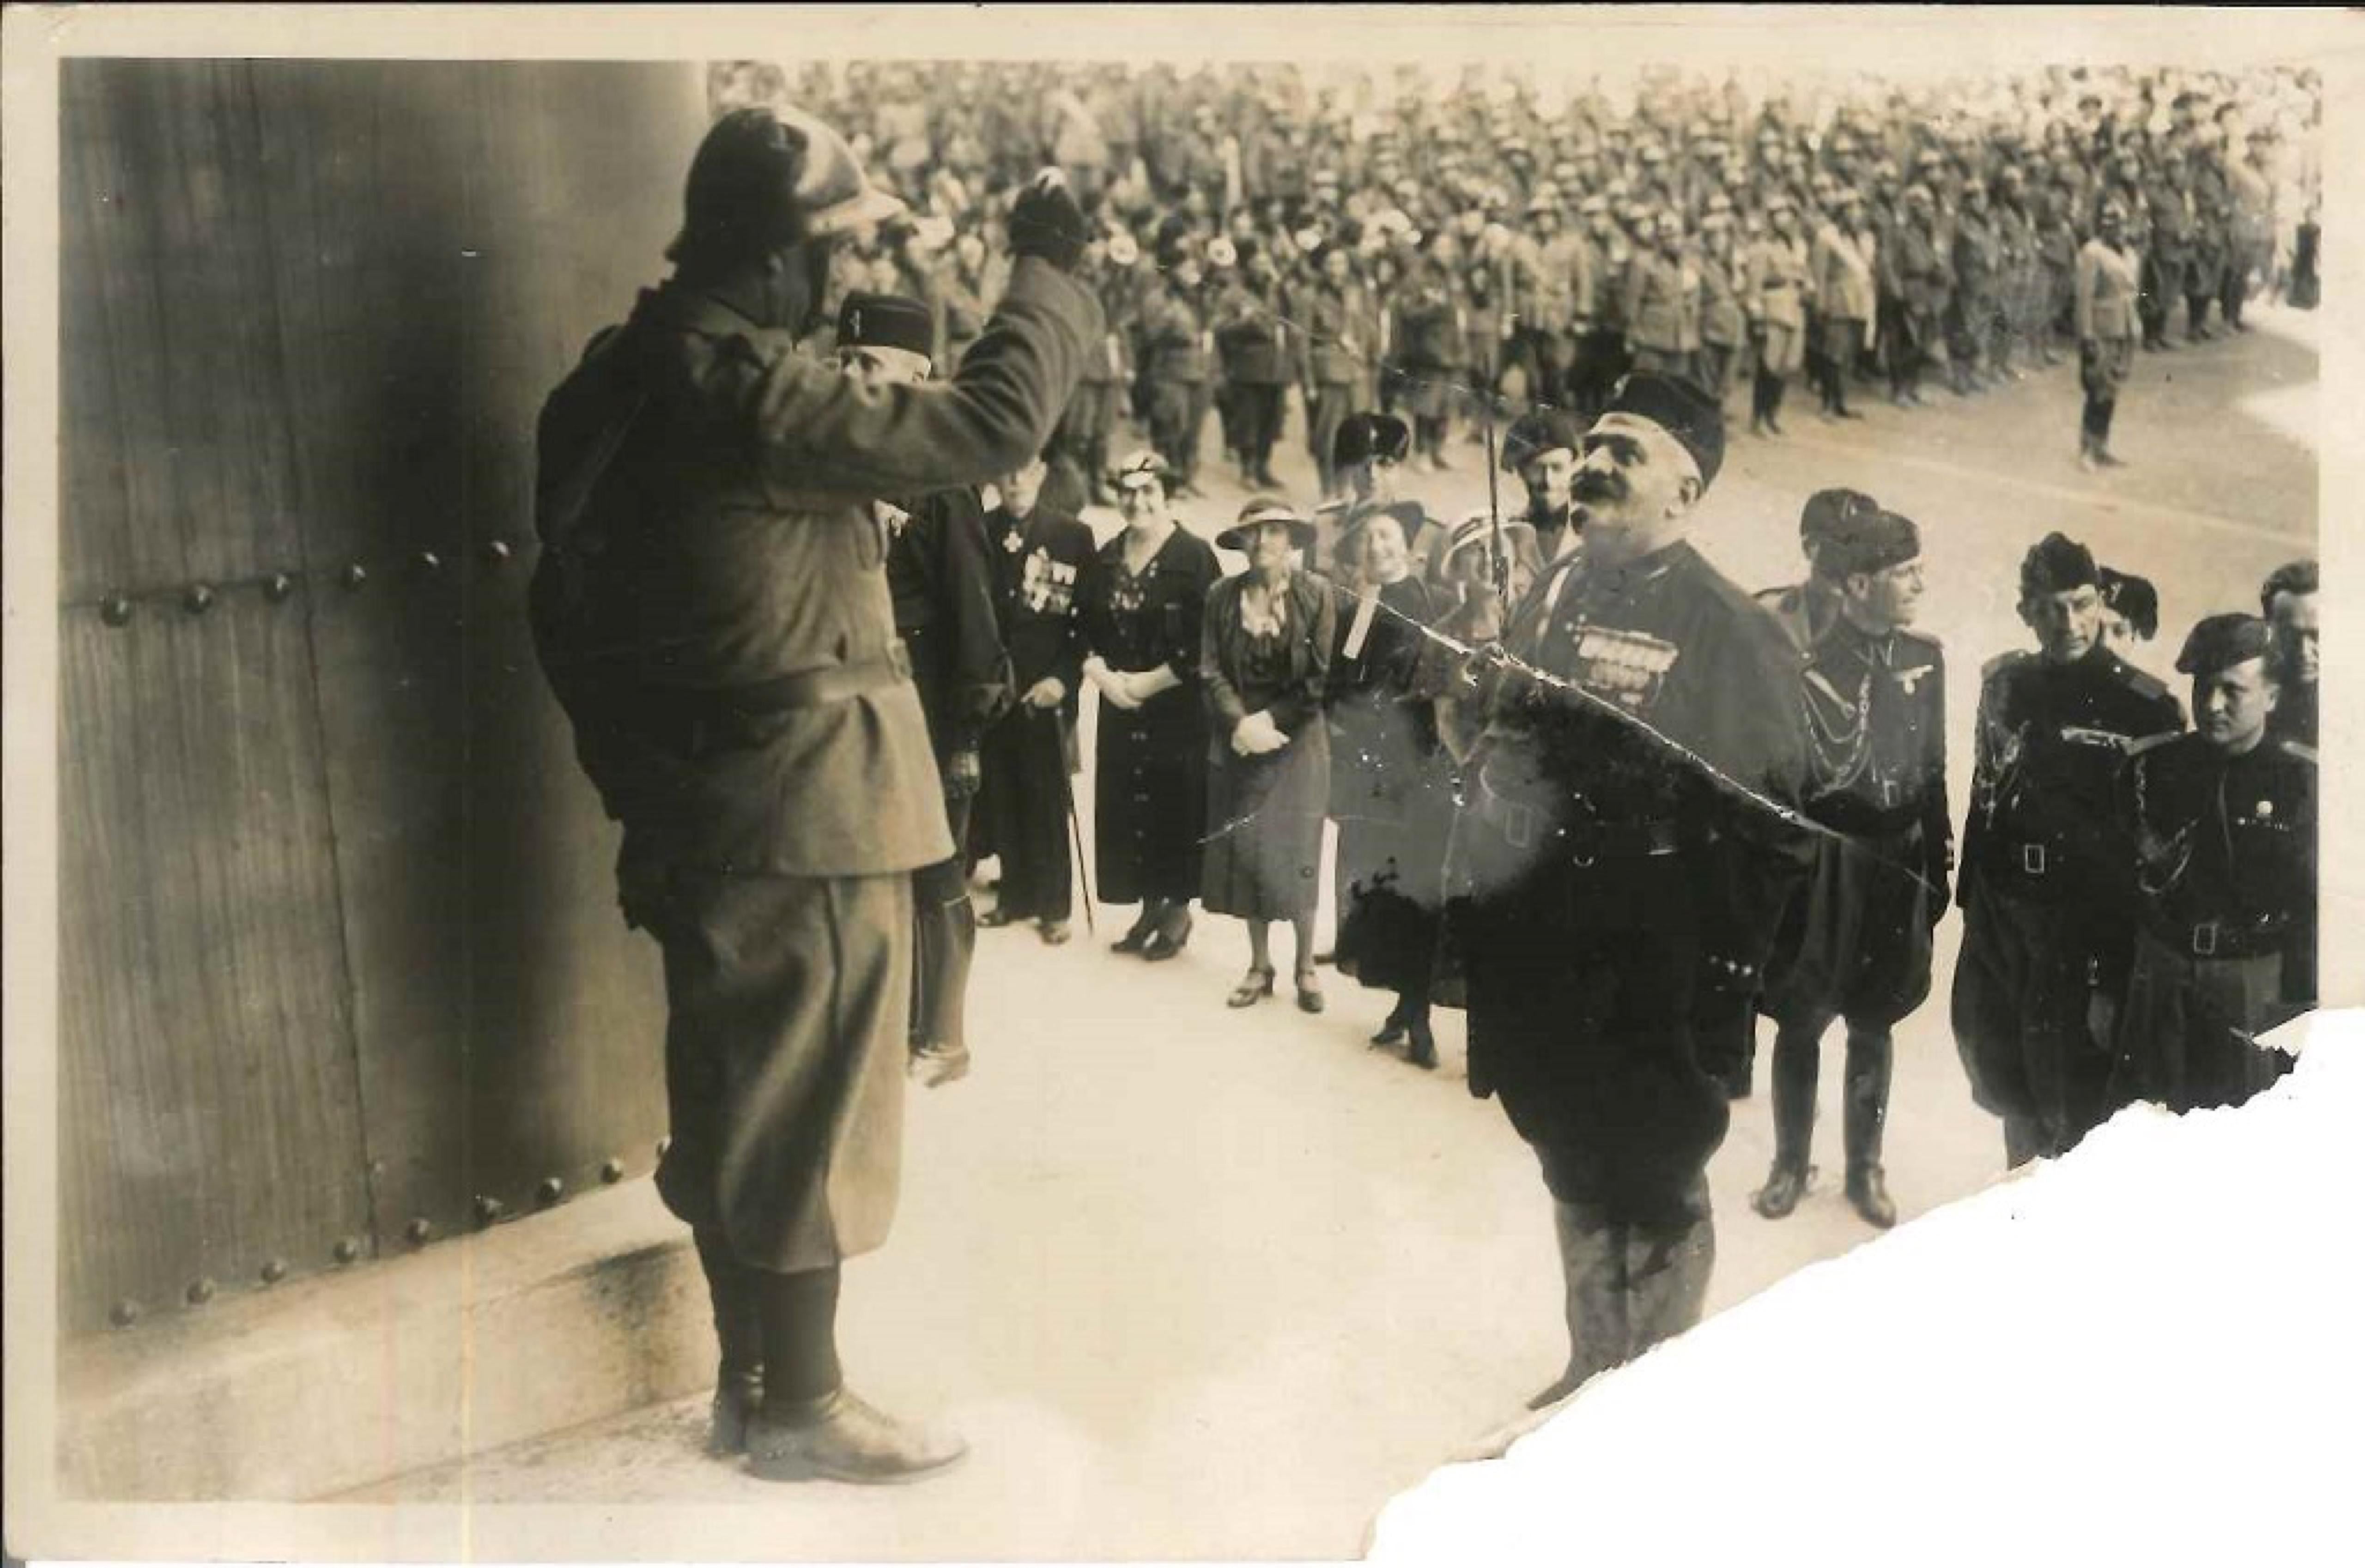 Unknown Portrait Photograph – Zeremonien in Italien während des Fascismus - Vintage-Foto - 1930er Jahre